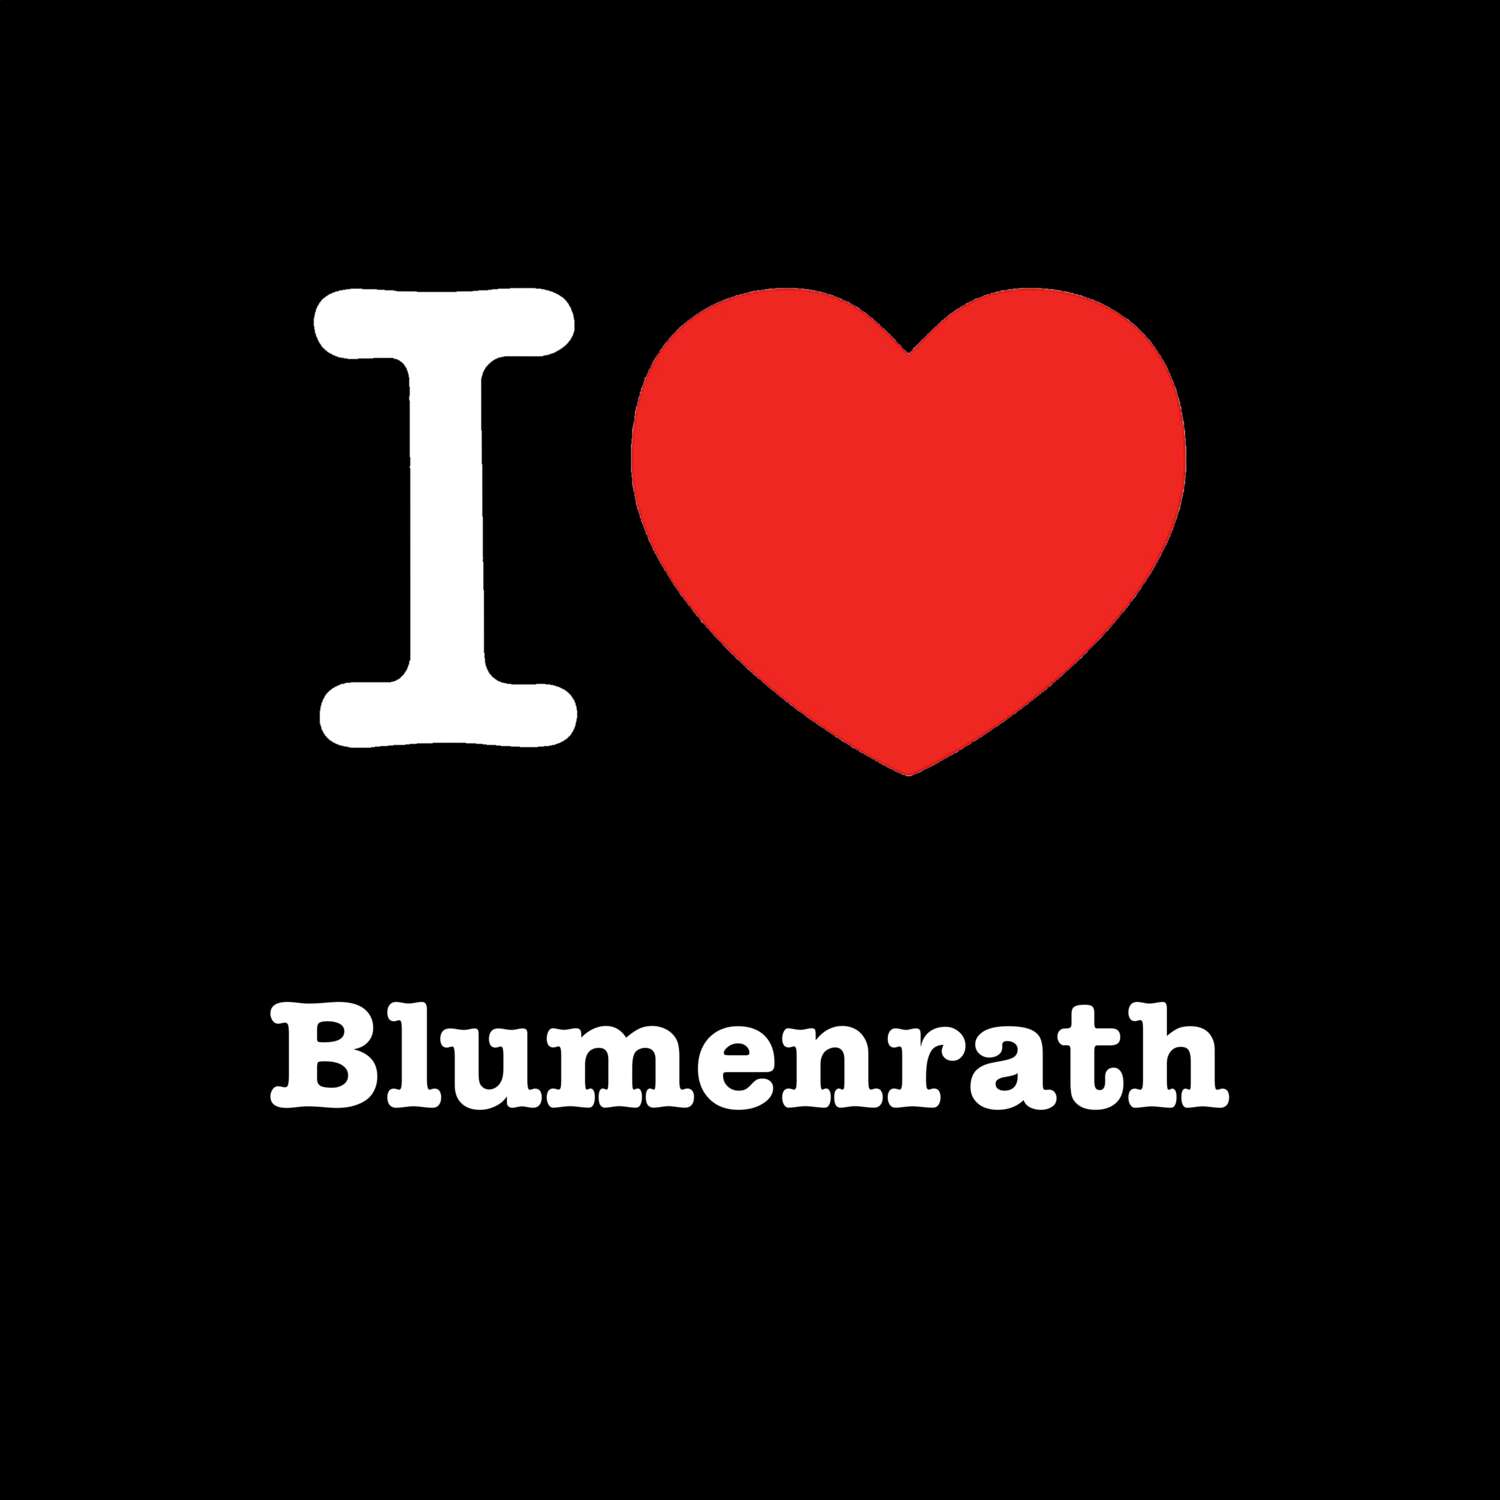 Blumenrath T-Shirt »I love«